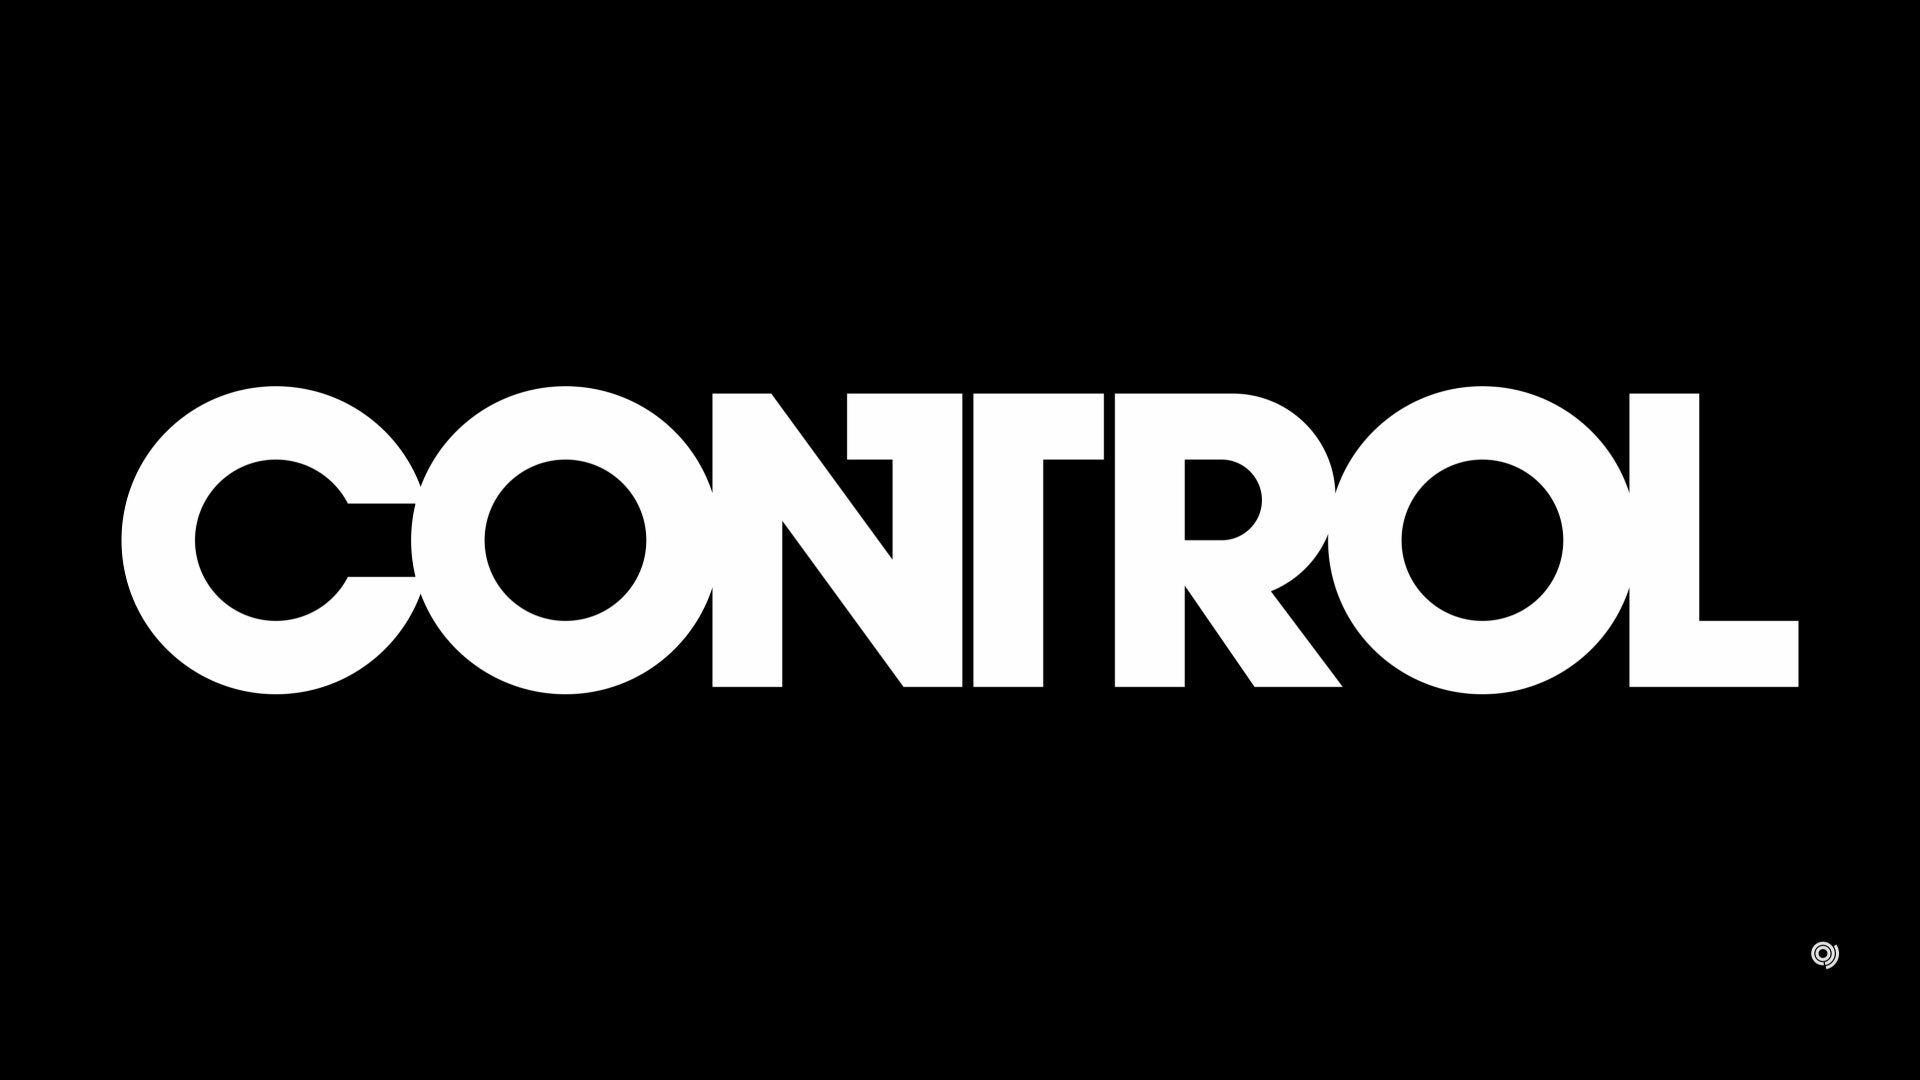 Control-logo.jpg